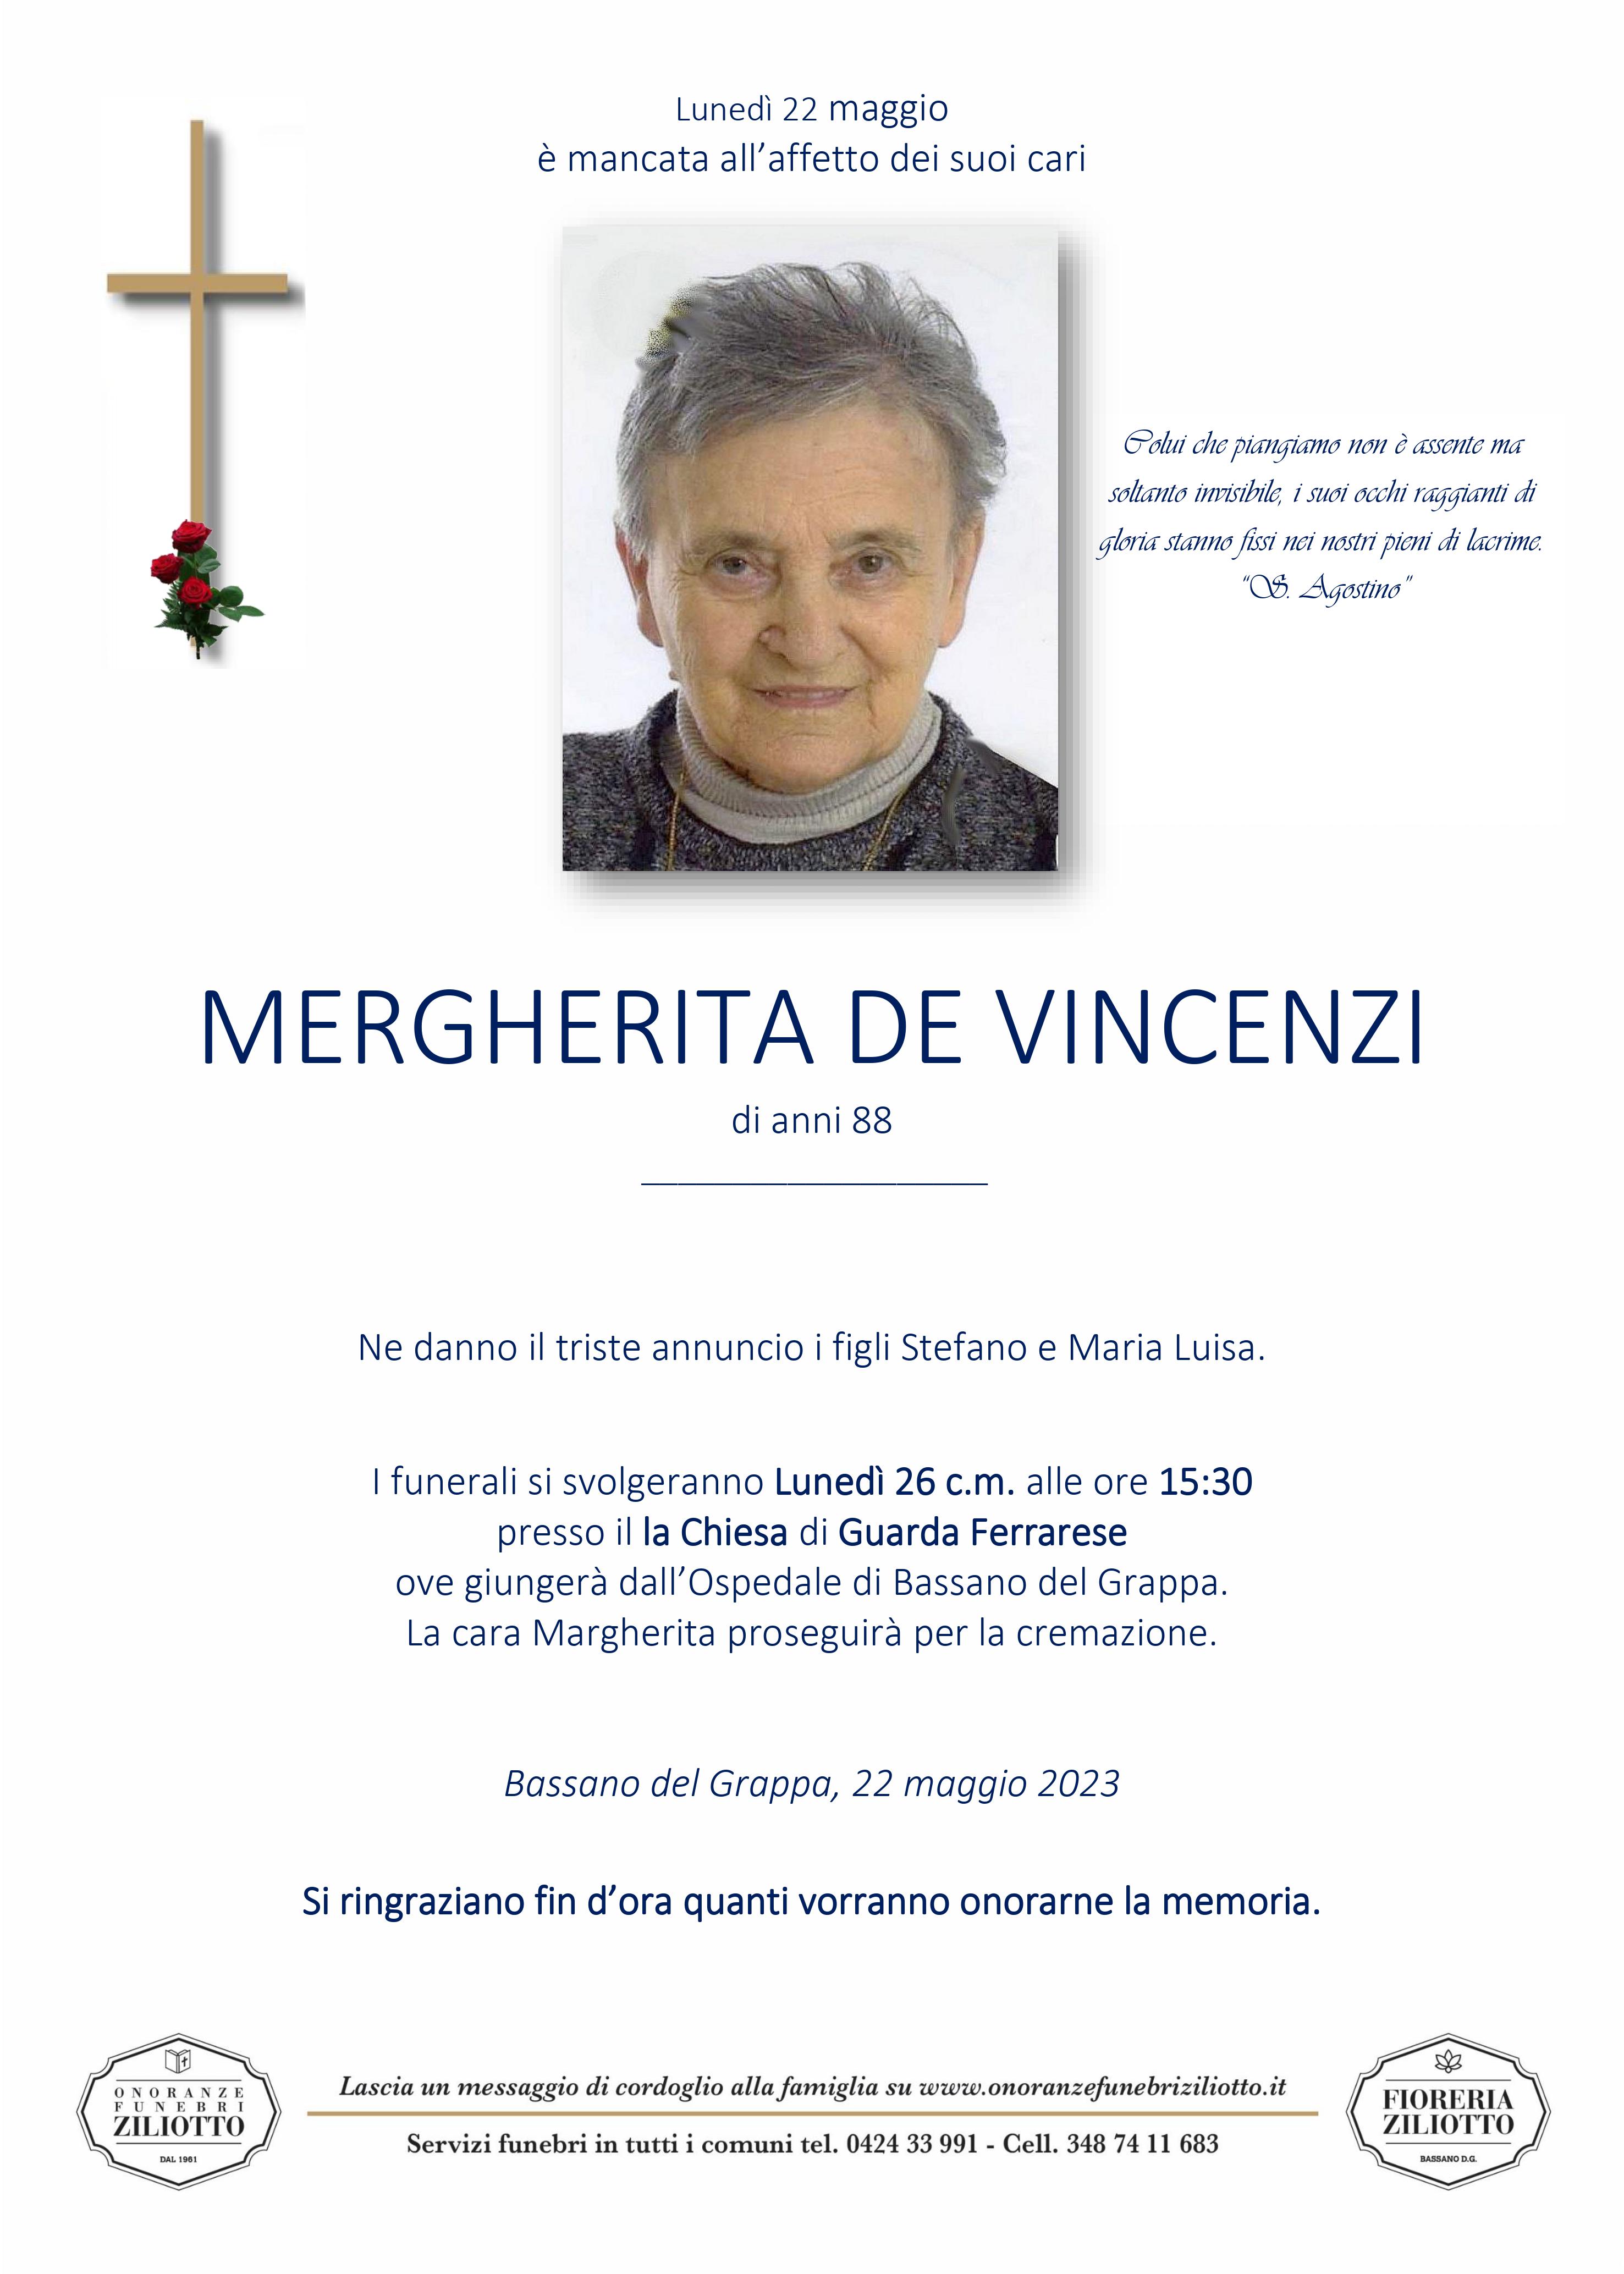 Margherita De Vincenzi - 88 anni - Bassano del Grappa